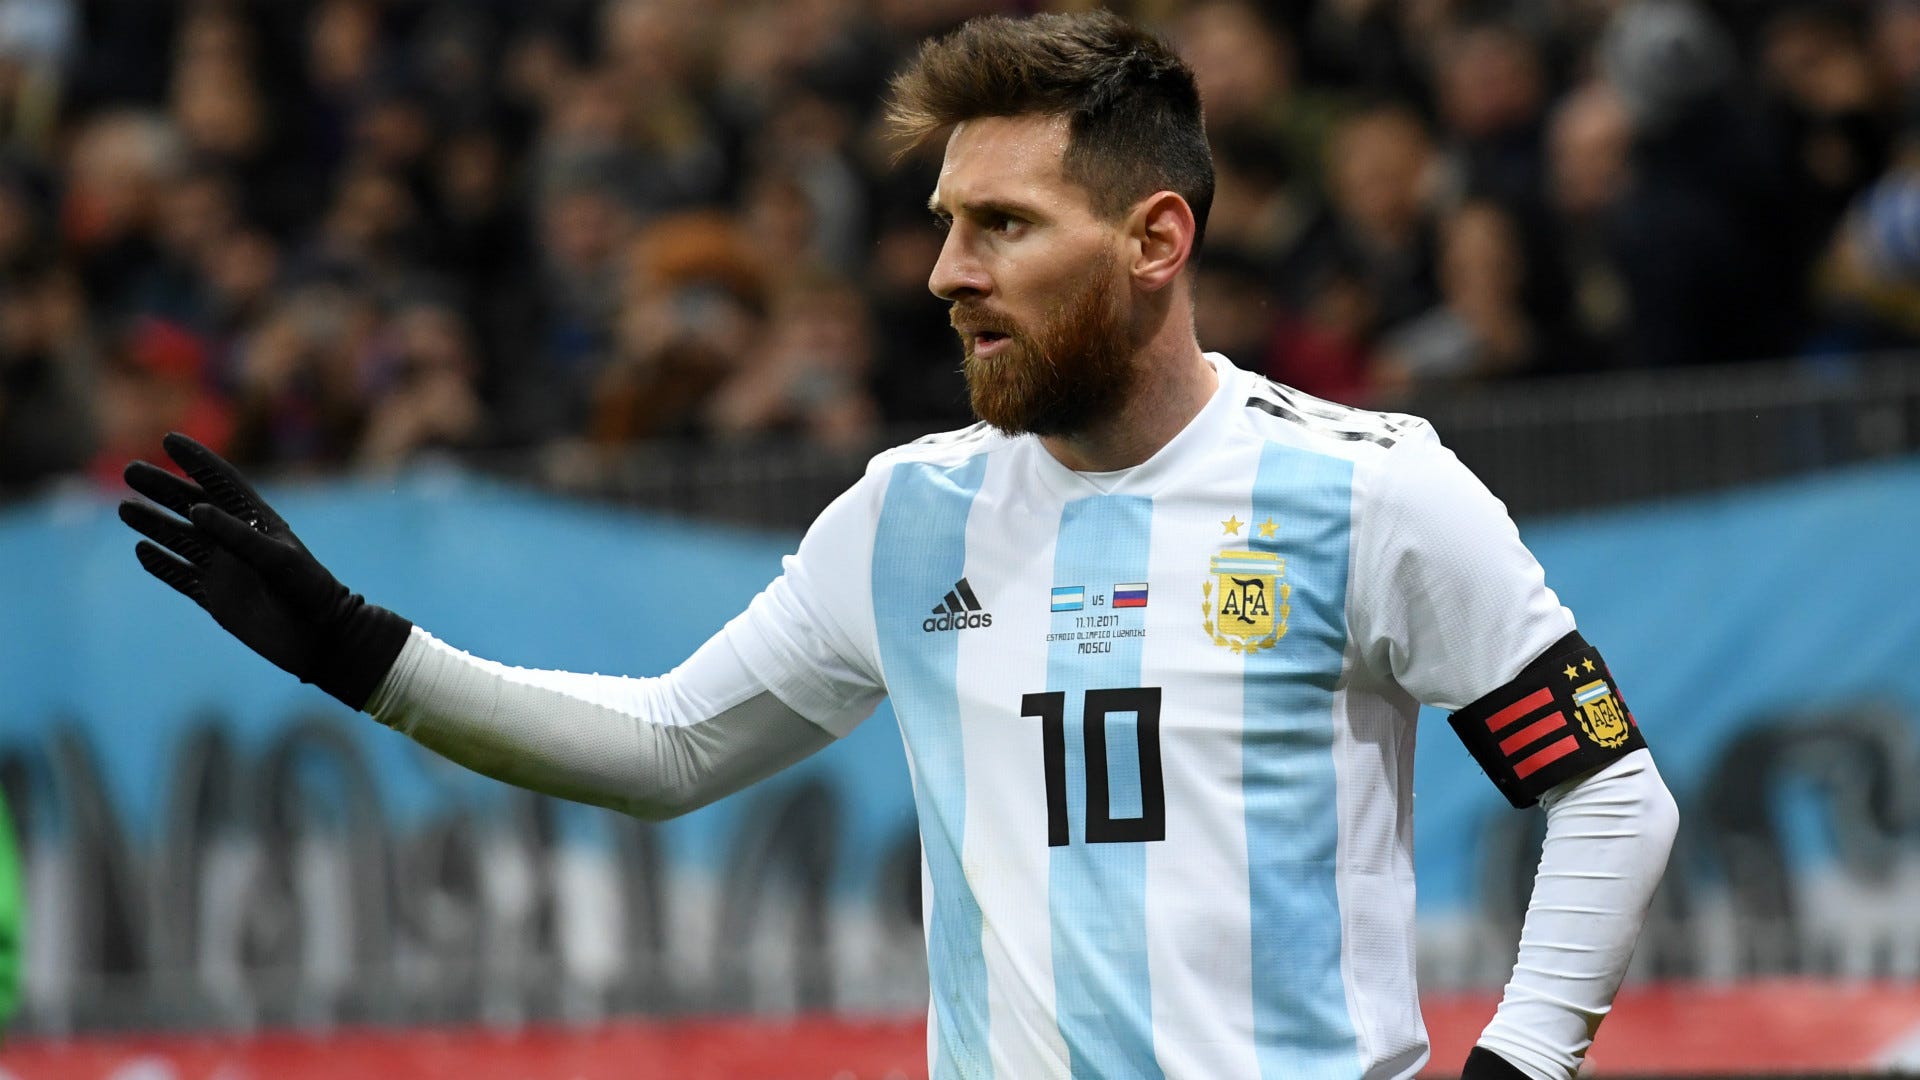 Đằng sau những pha lập công kỳ diệu của Messi là một tài năng siêu phàm đang hướng đến thành công tại World Cup. Hãy cùng chiêm ngưỡng những khoảnh khắc đầy cảm xúc của \